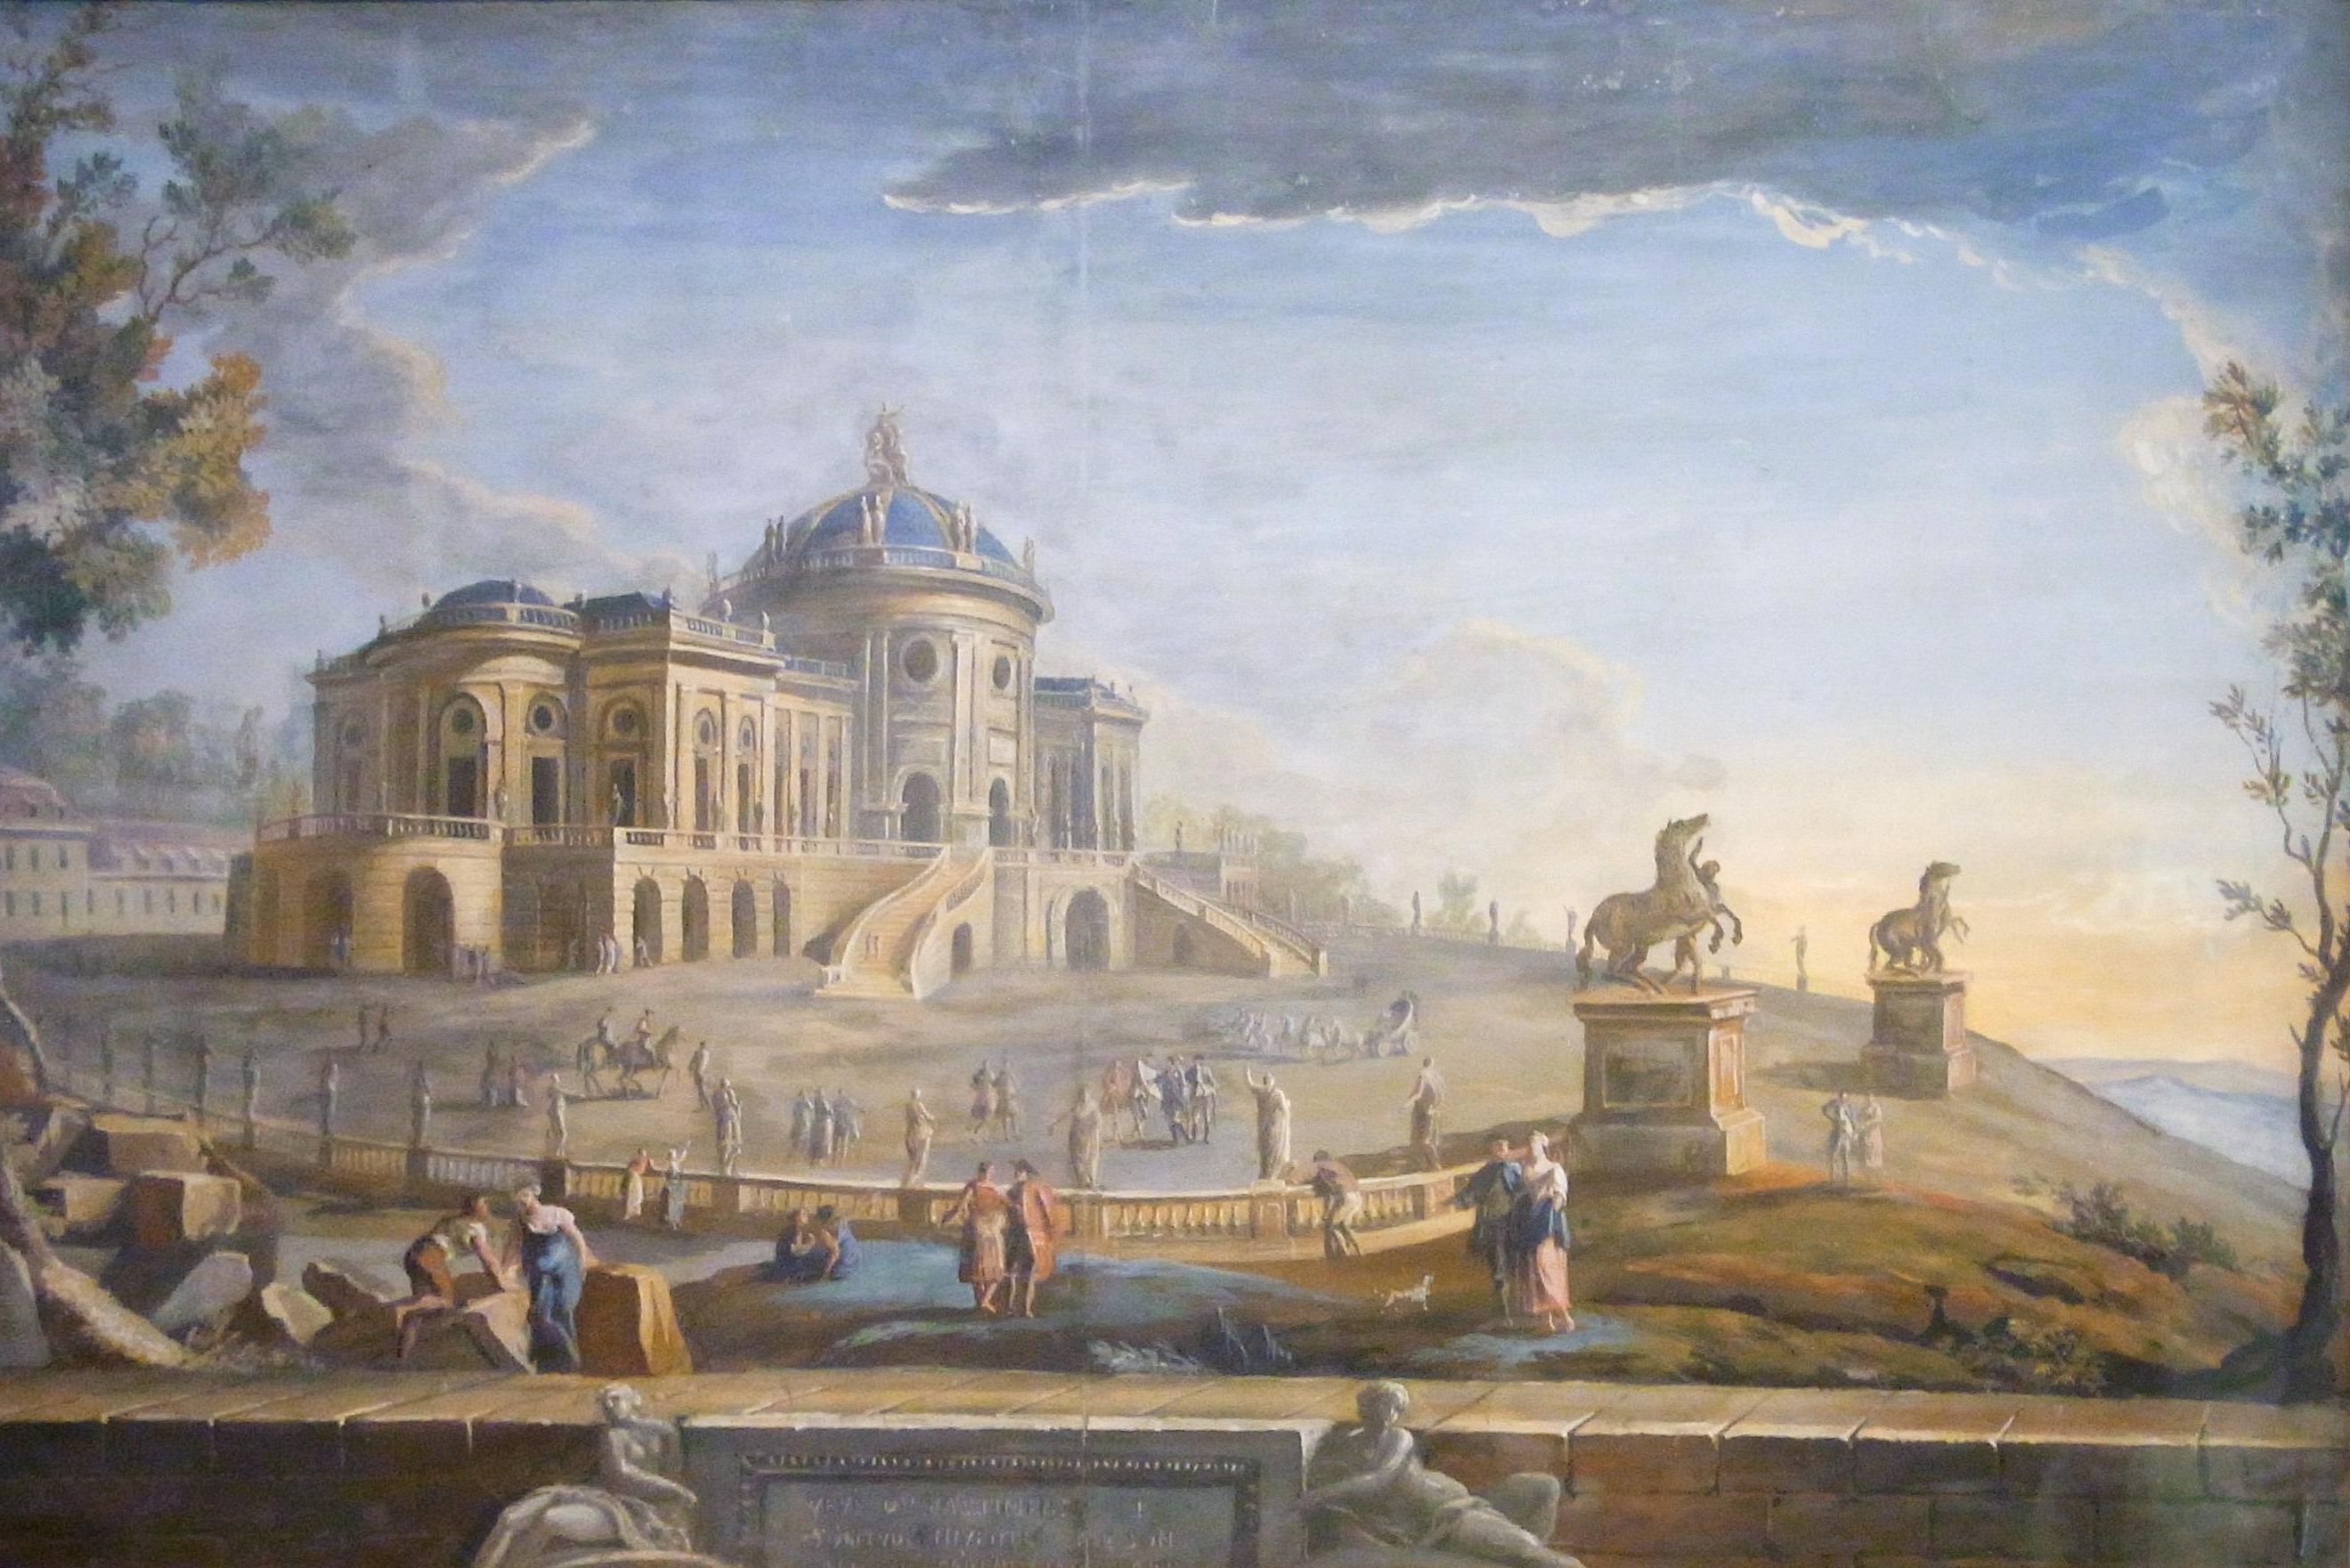 Schloss Solitude, Gemälde von Jean Adrien Claude Servadoni, um 1765